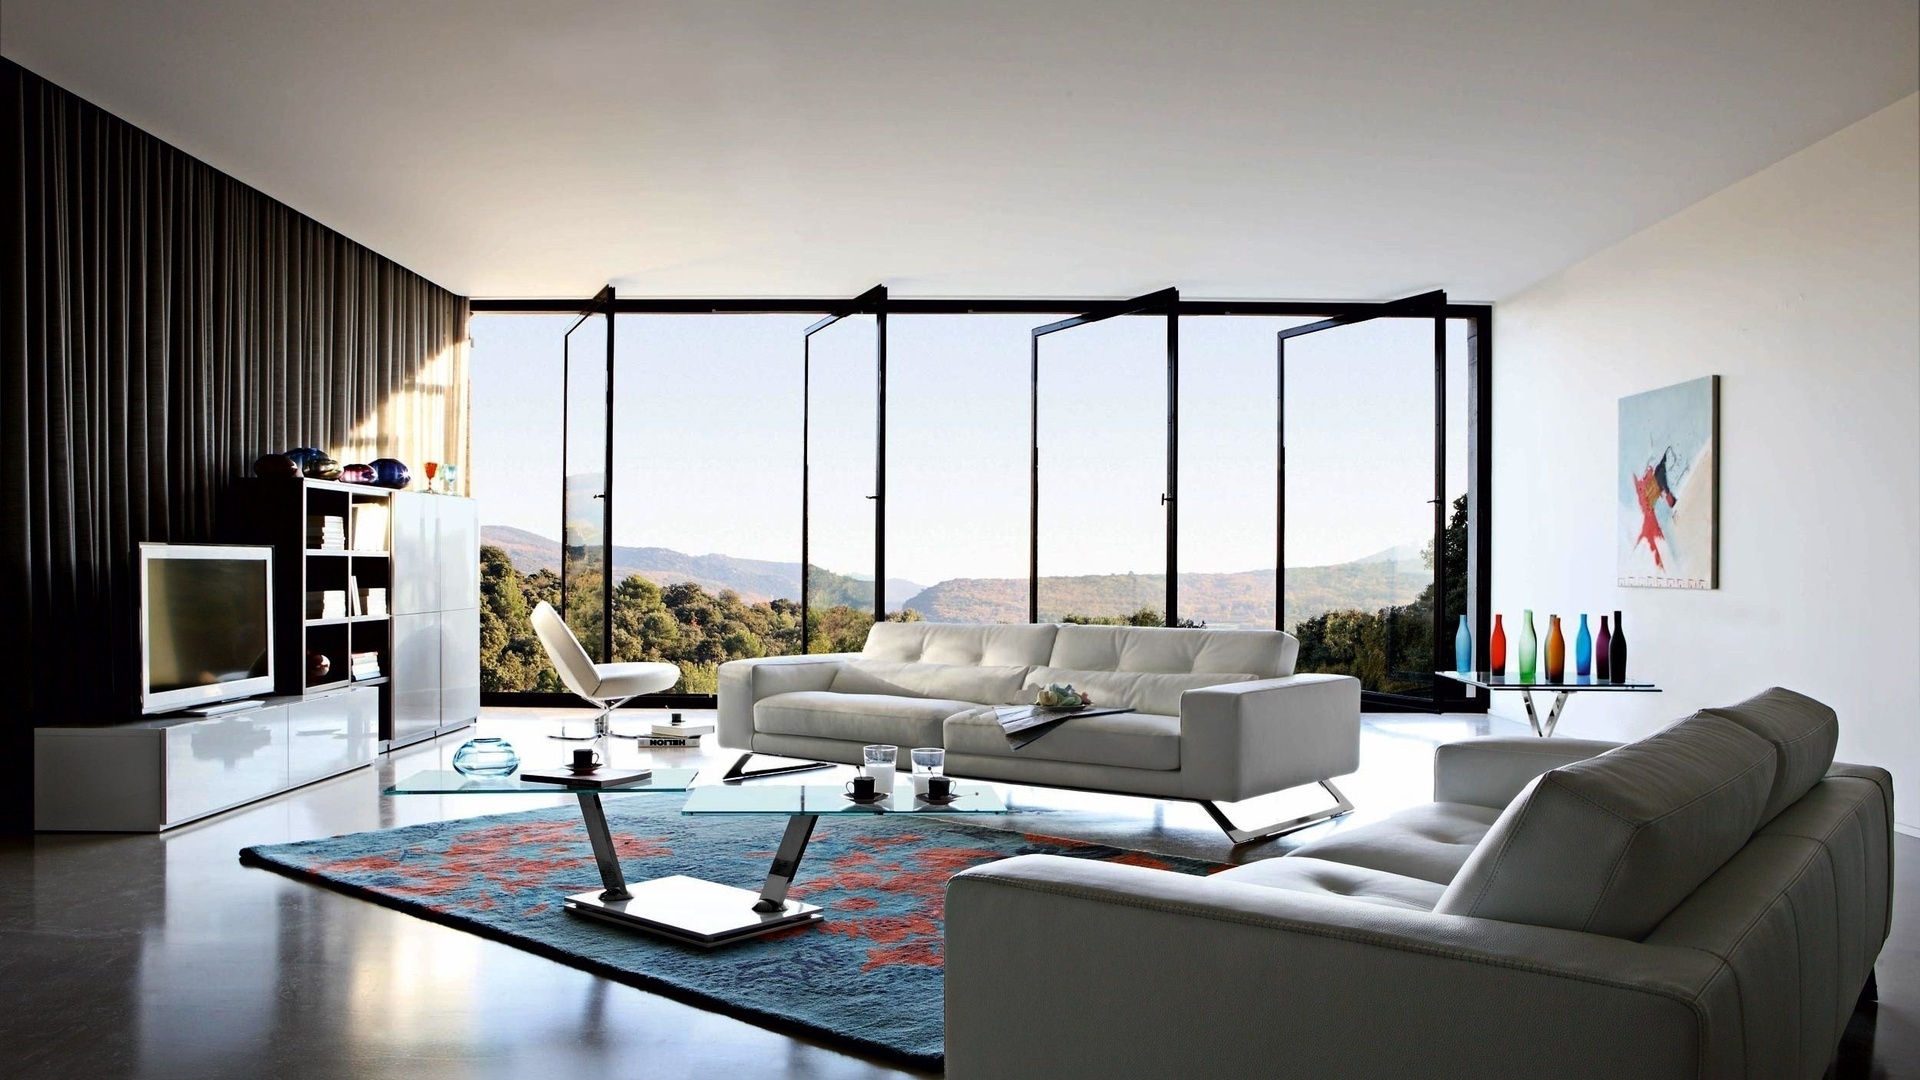 Spacious minimalist living room